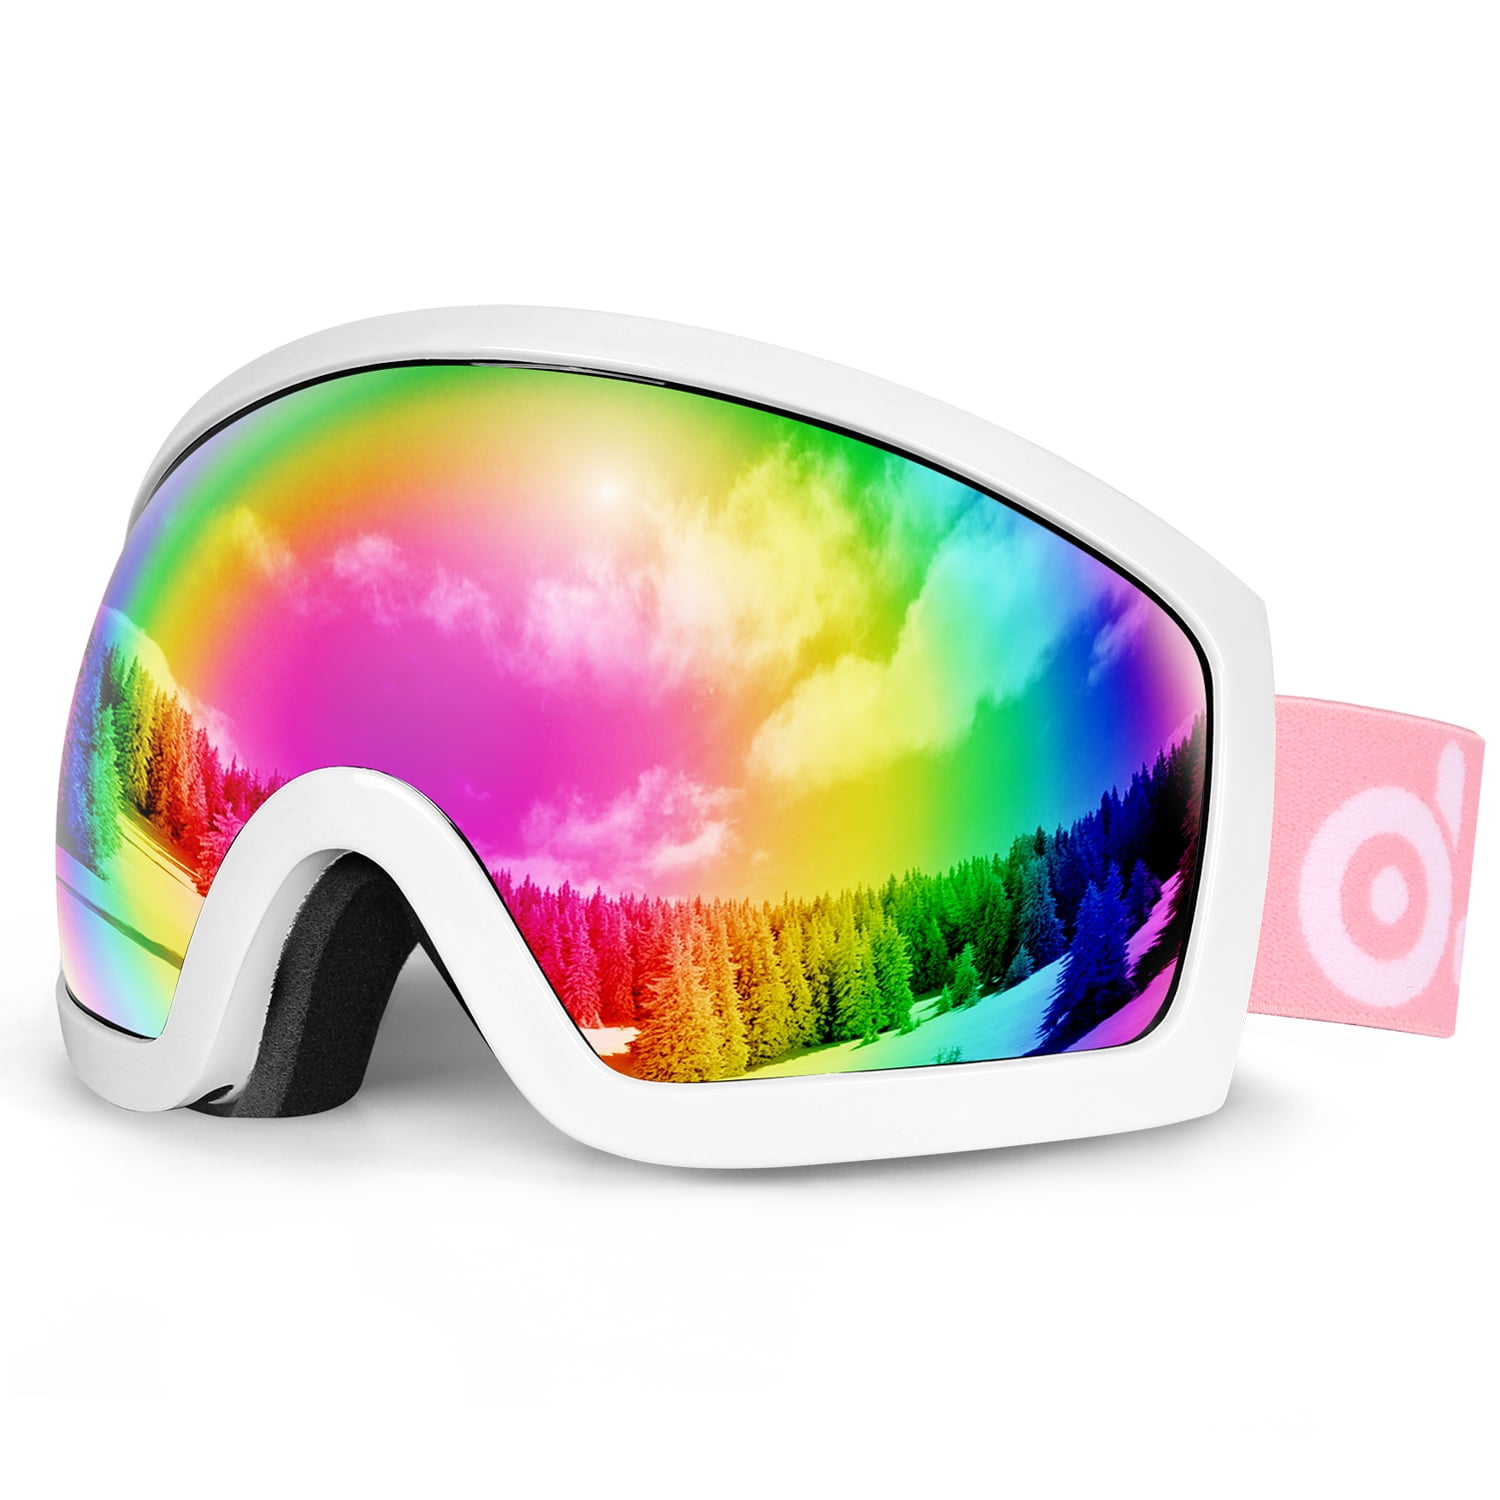 Odoland large spherical frameless ski goggles for men and women s2 otg double 